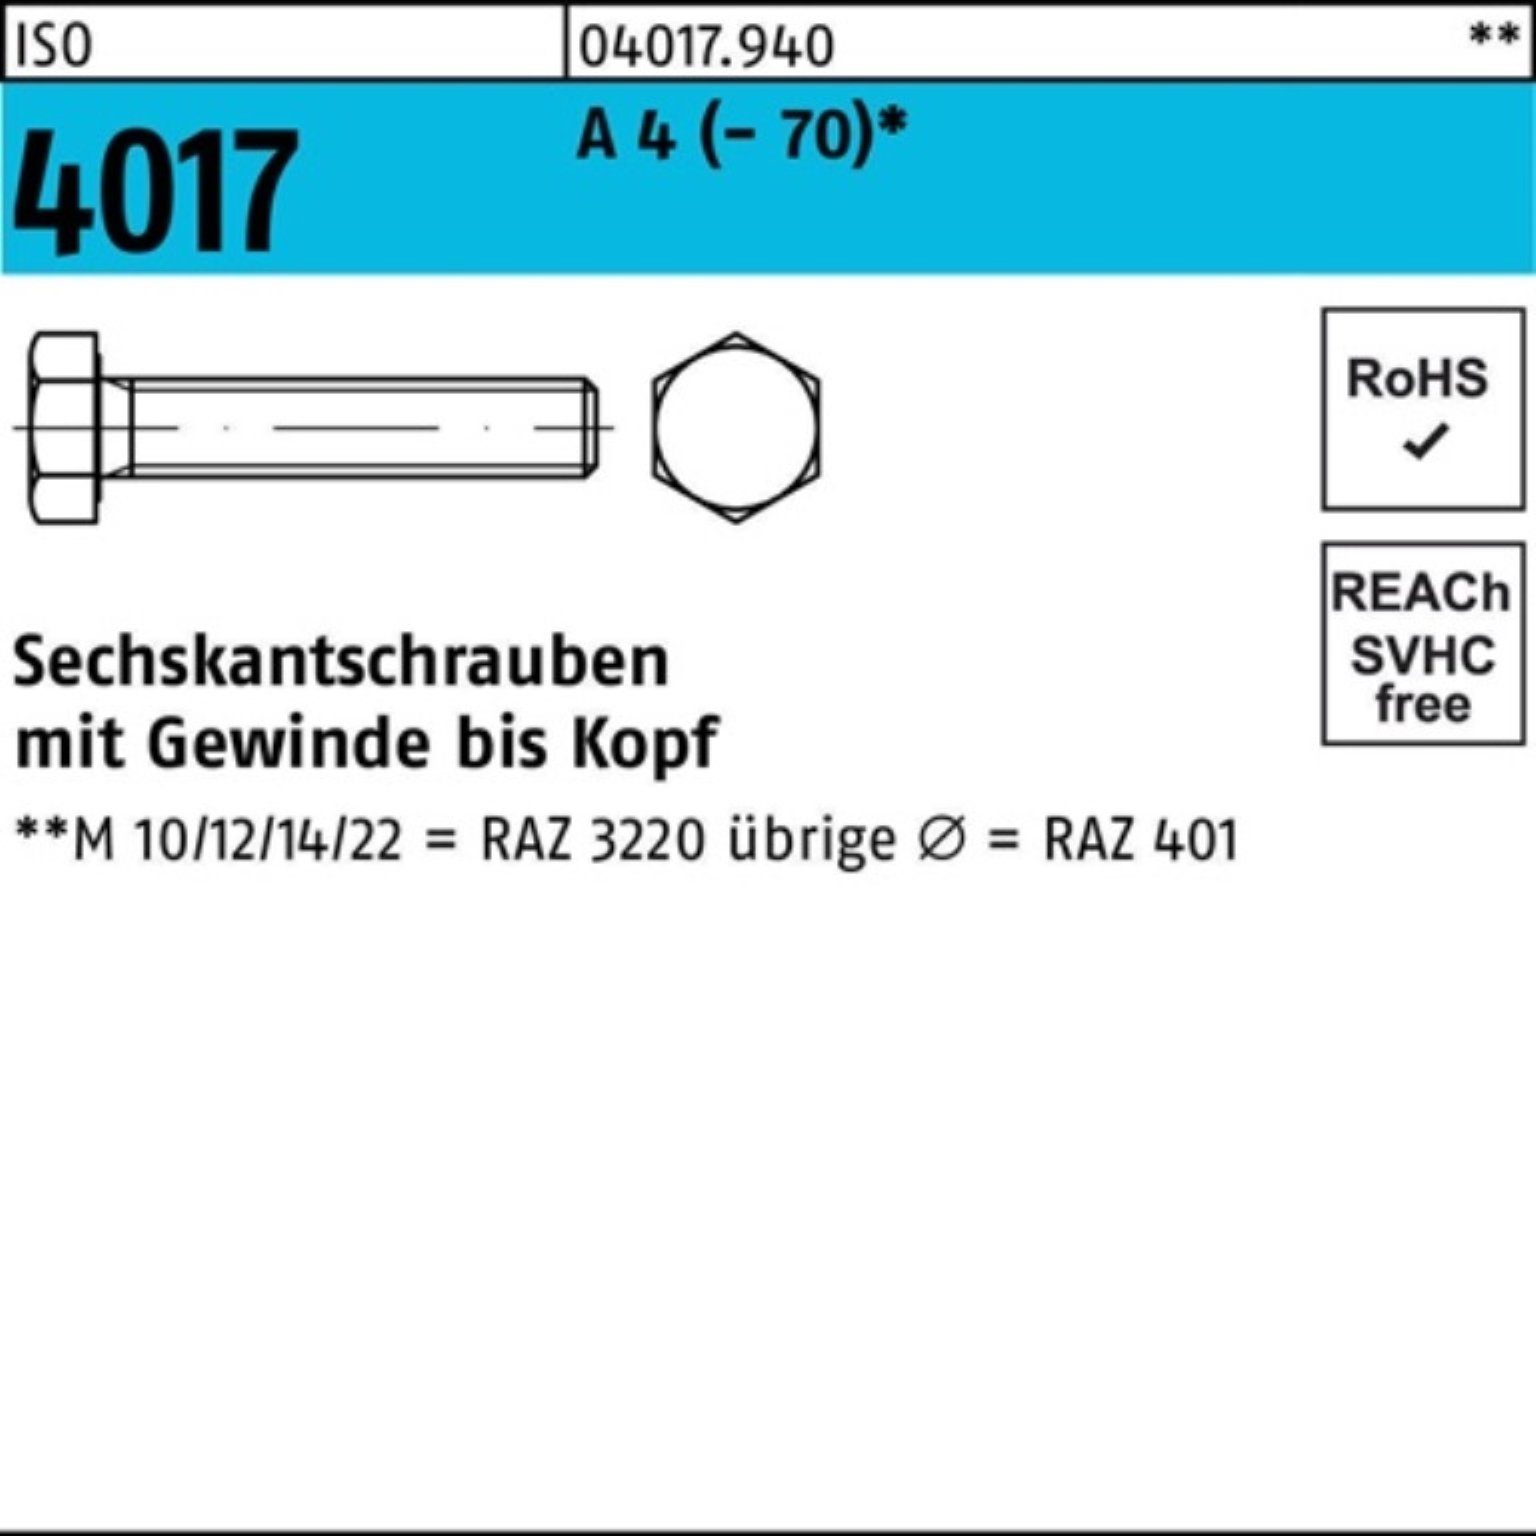 Bufab Sechskantschraube 100er Pack Sechskantschraube ISO 4017 VG M16x 170 A 4 (70) 1 Stück